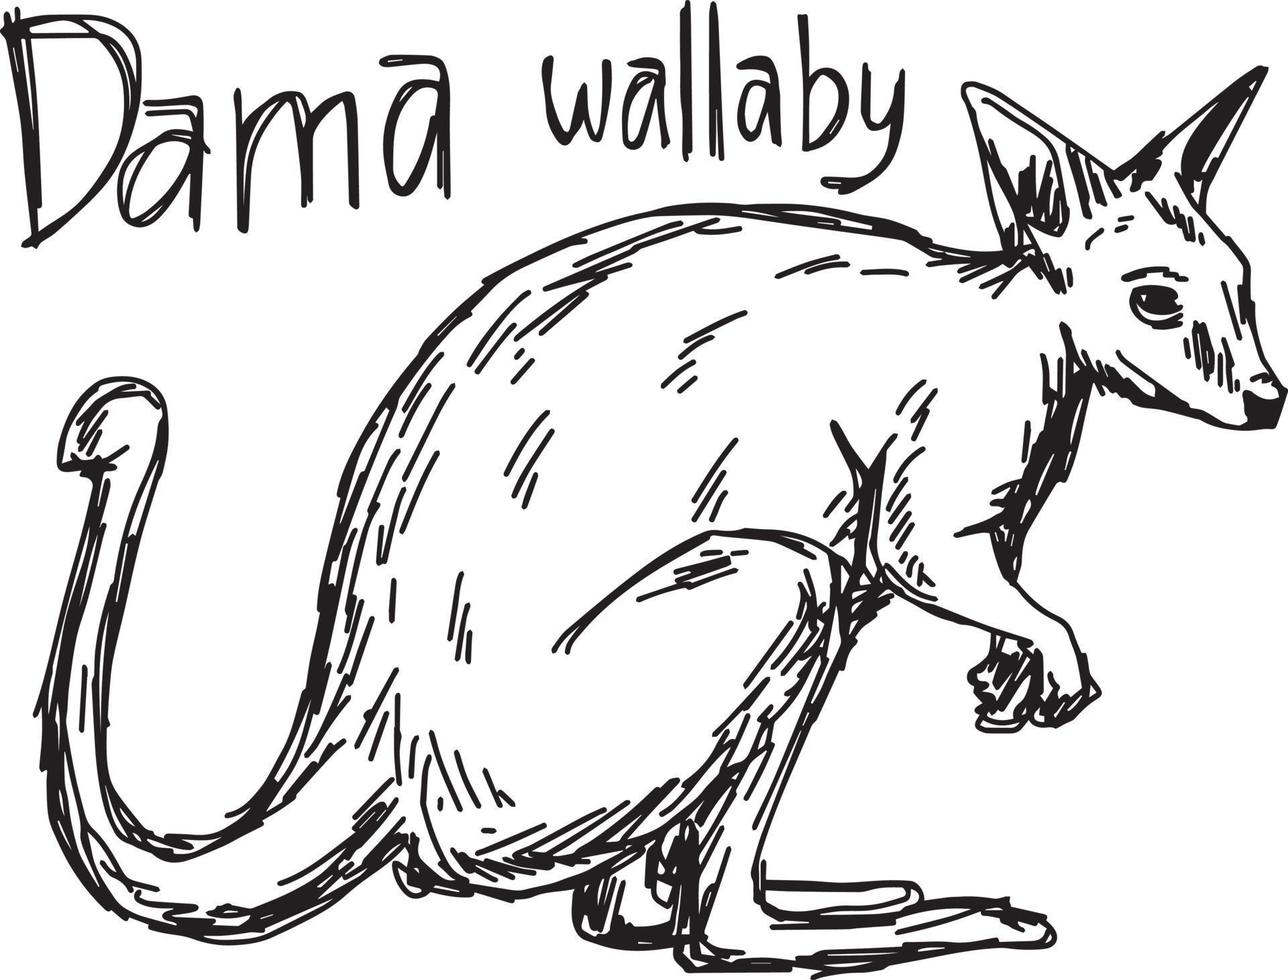 Dama Wallaby - Vektor-Illustration Skizze von Hand gezeichnet vektor